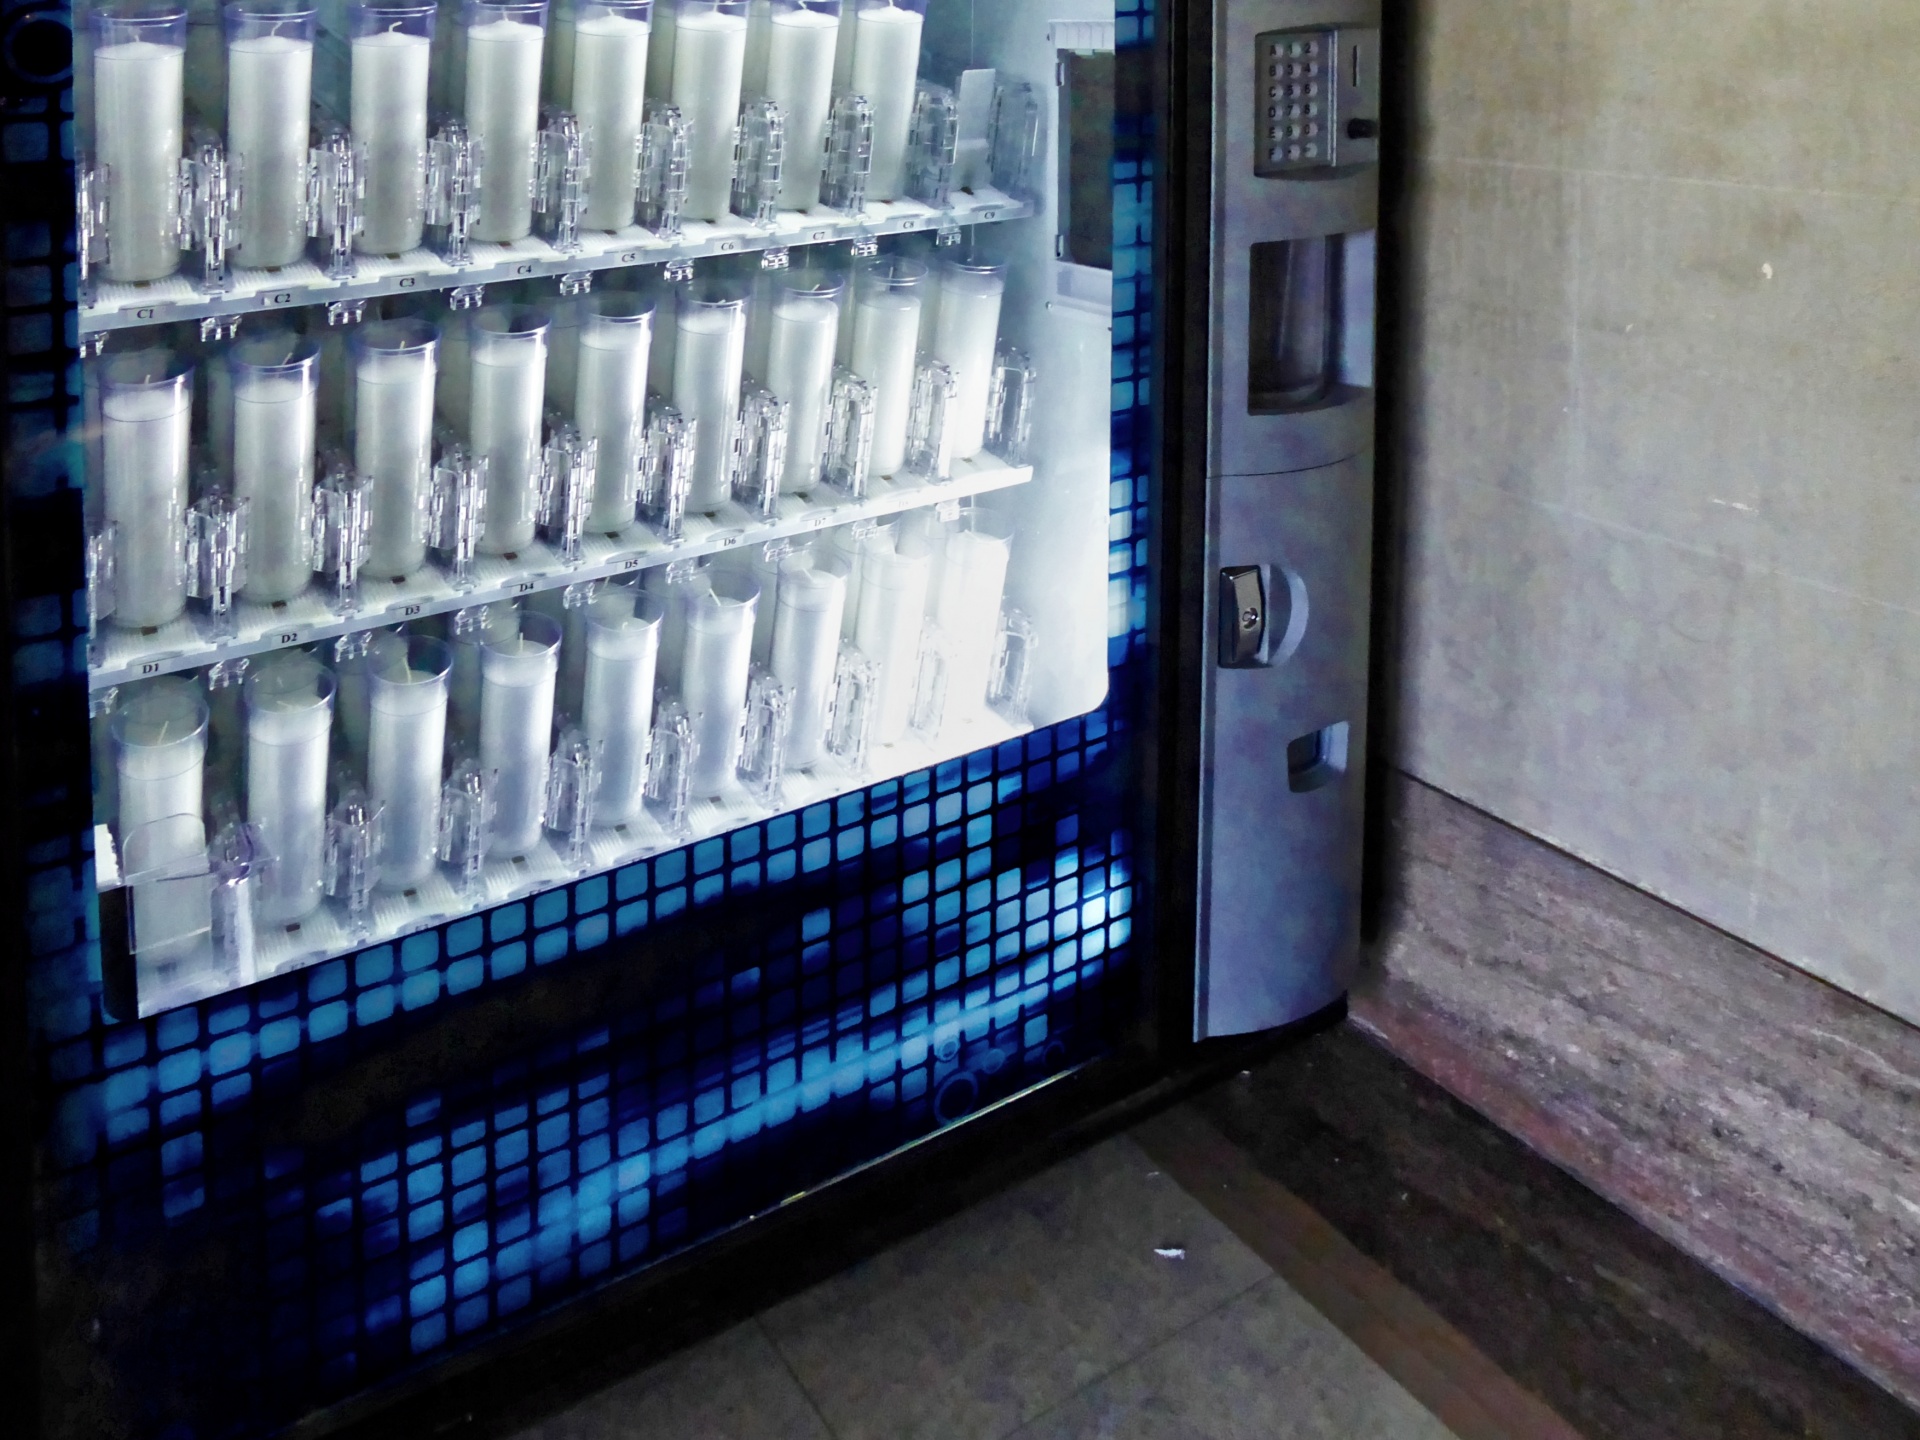 catholic-candle-vending-machine.jpg